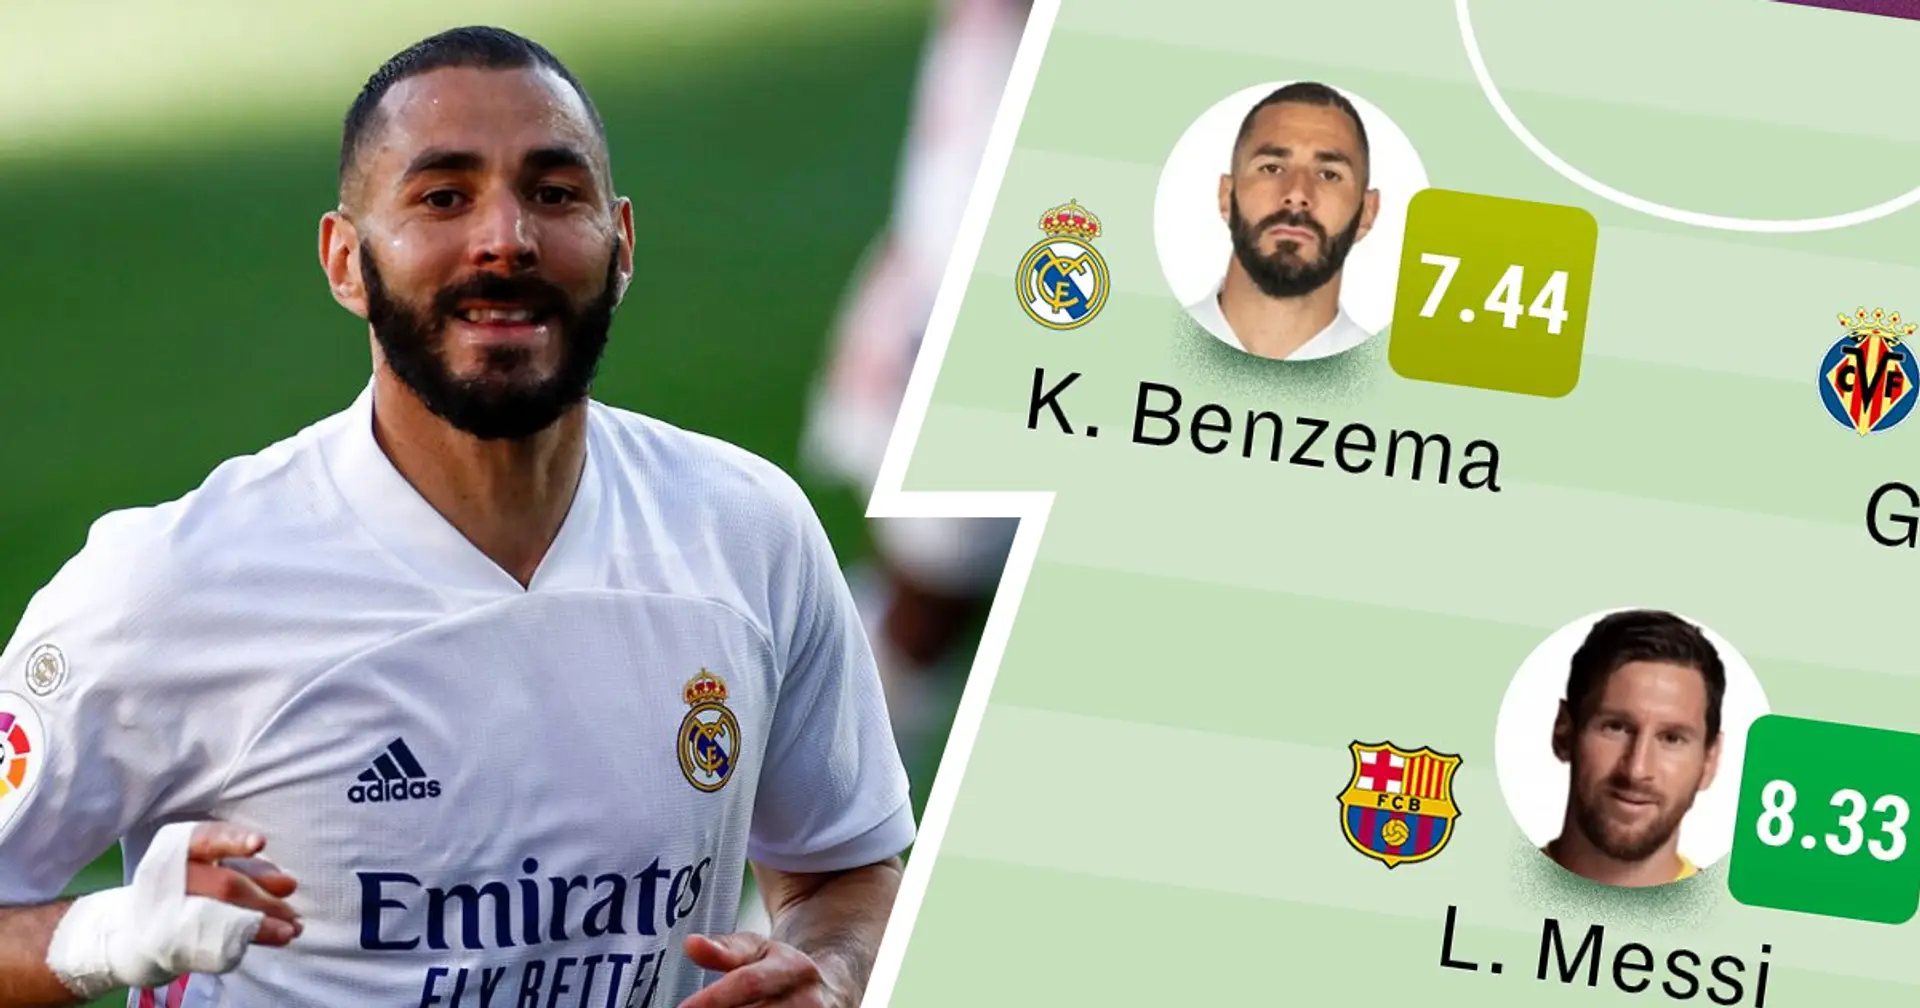 Benzema y dos más: 3 jugadores del Madrid en el XI ideal de LaLiga según Sofascore